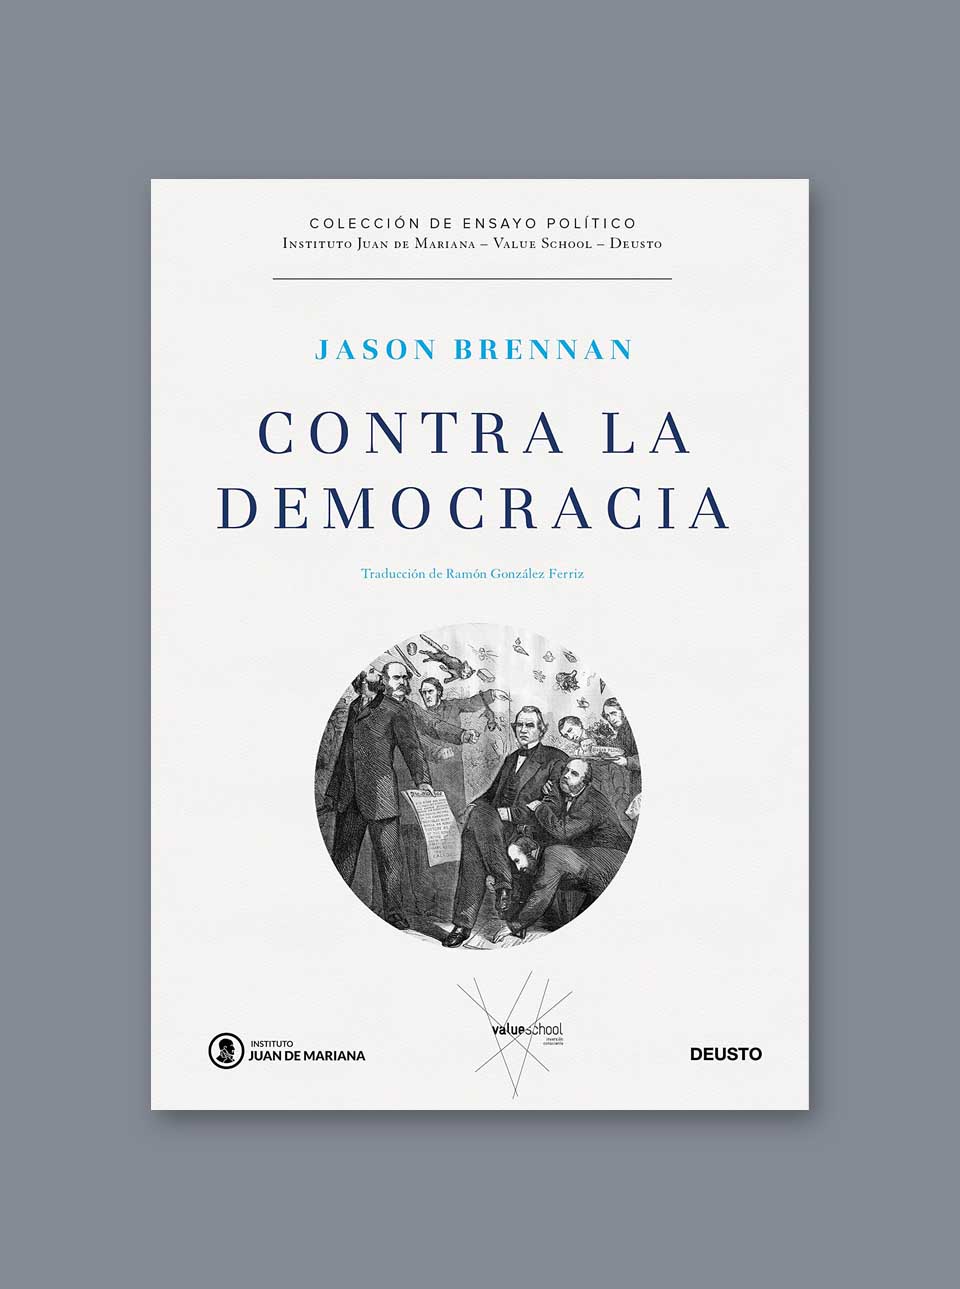 Contra la democracia de Jason Brennan